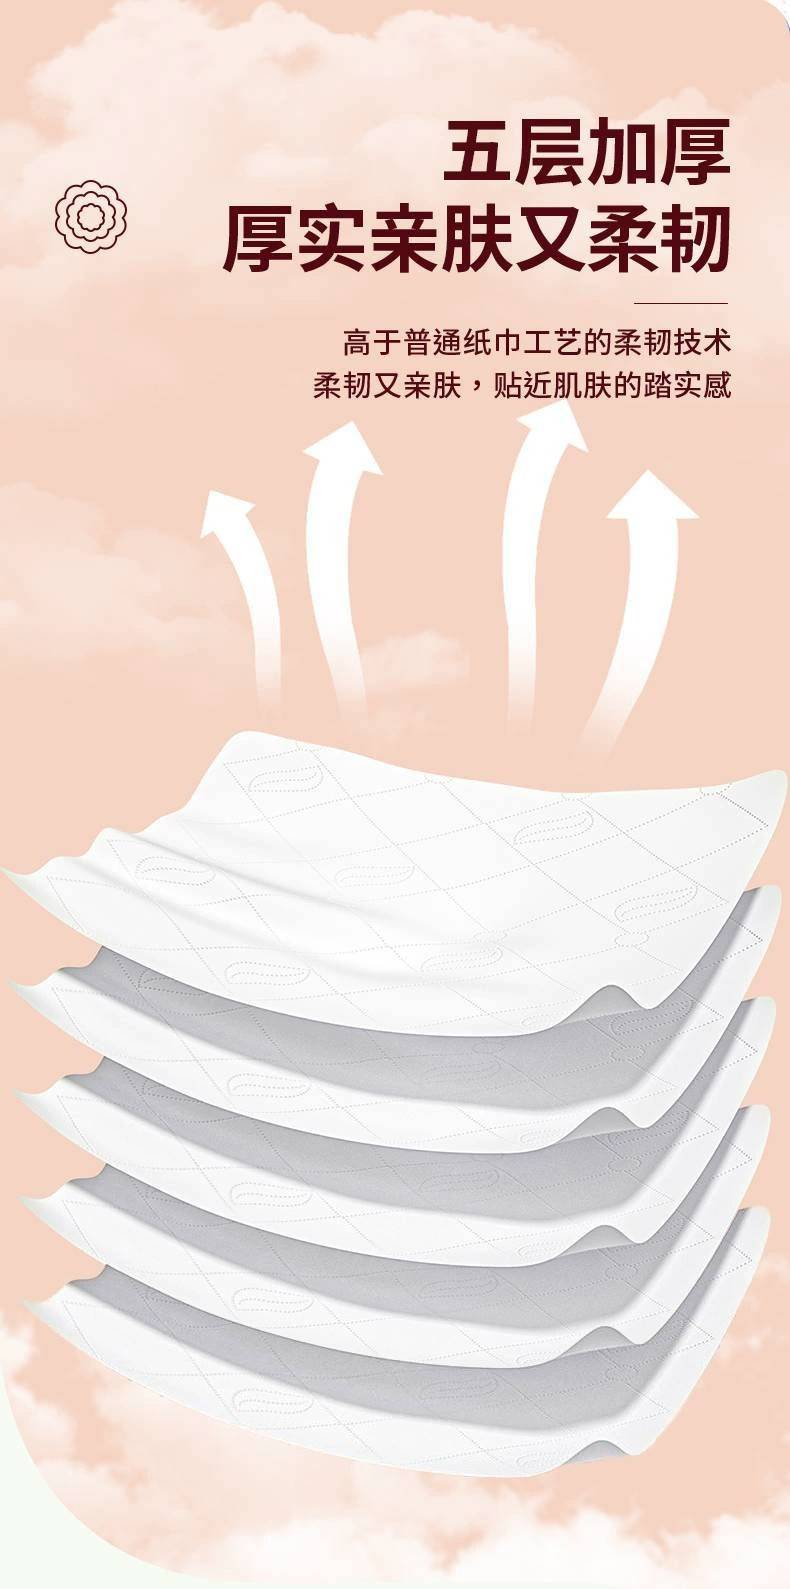 【10大提券后44.9】悬挂式抽纸家用卫生纸亲肤柔韧面巾纸加大加厚纸巾